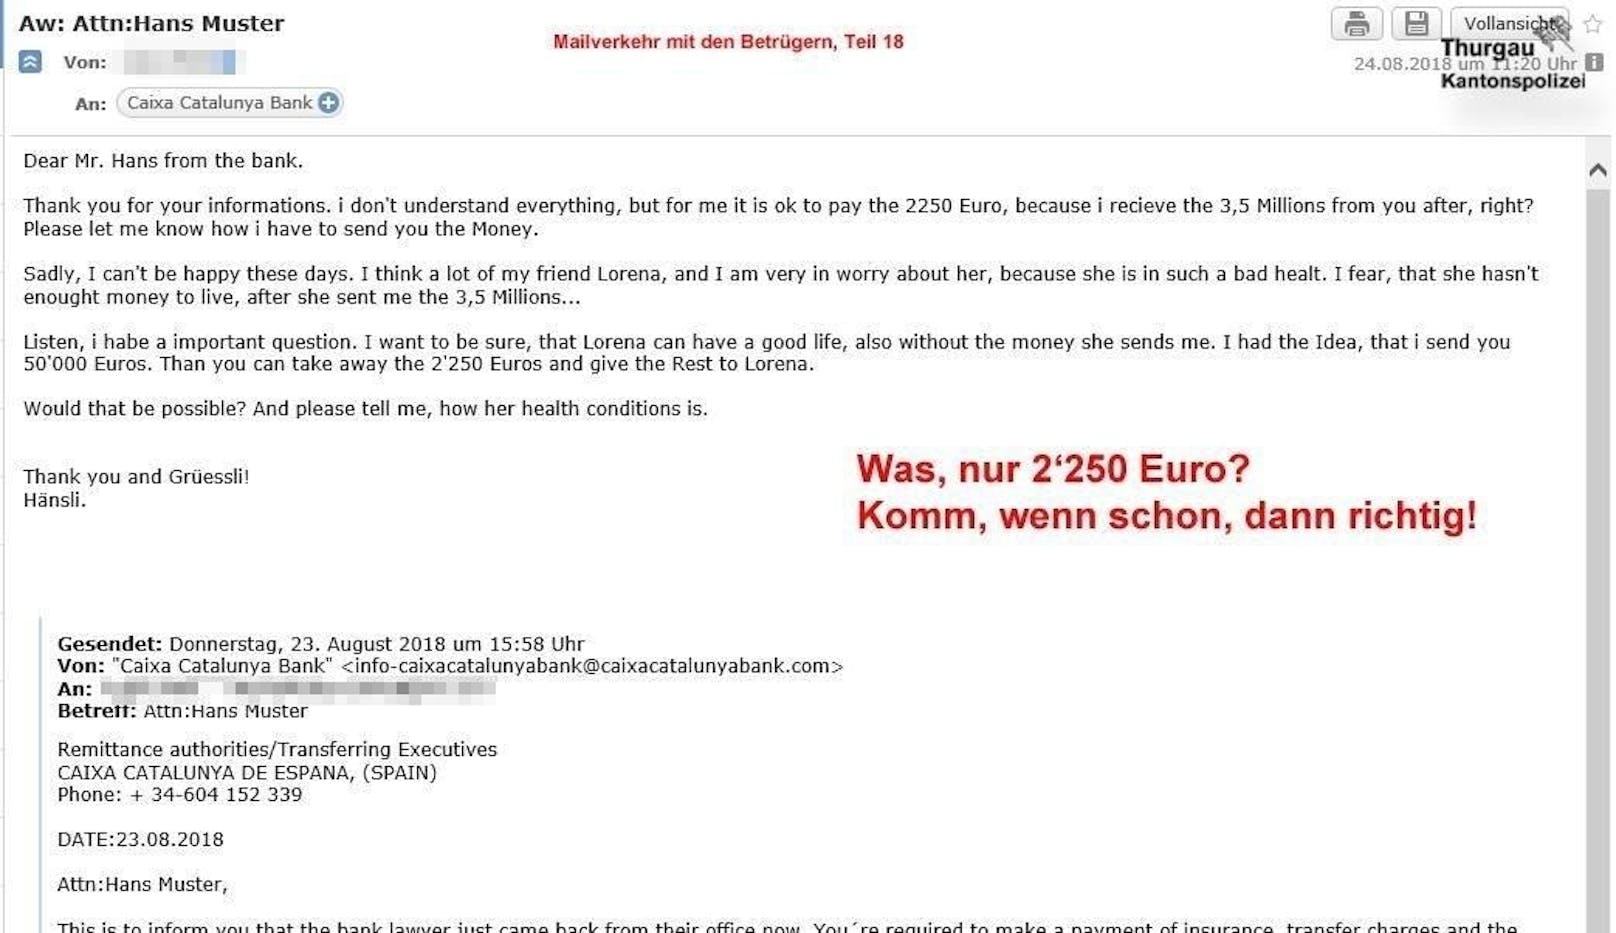 Doch Hänsli reagiert mit einem Vorschlag, die wohl auch die Betrüger so noch nicht gesehen haben: Er bietet gleich 50.000 Euro statt der geforderten 2.250 Euro an.